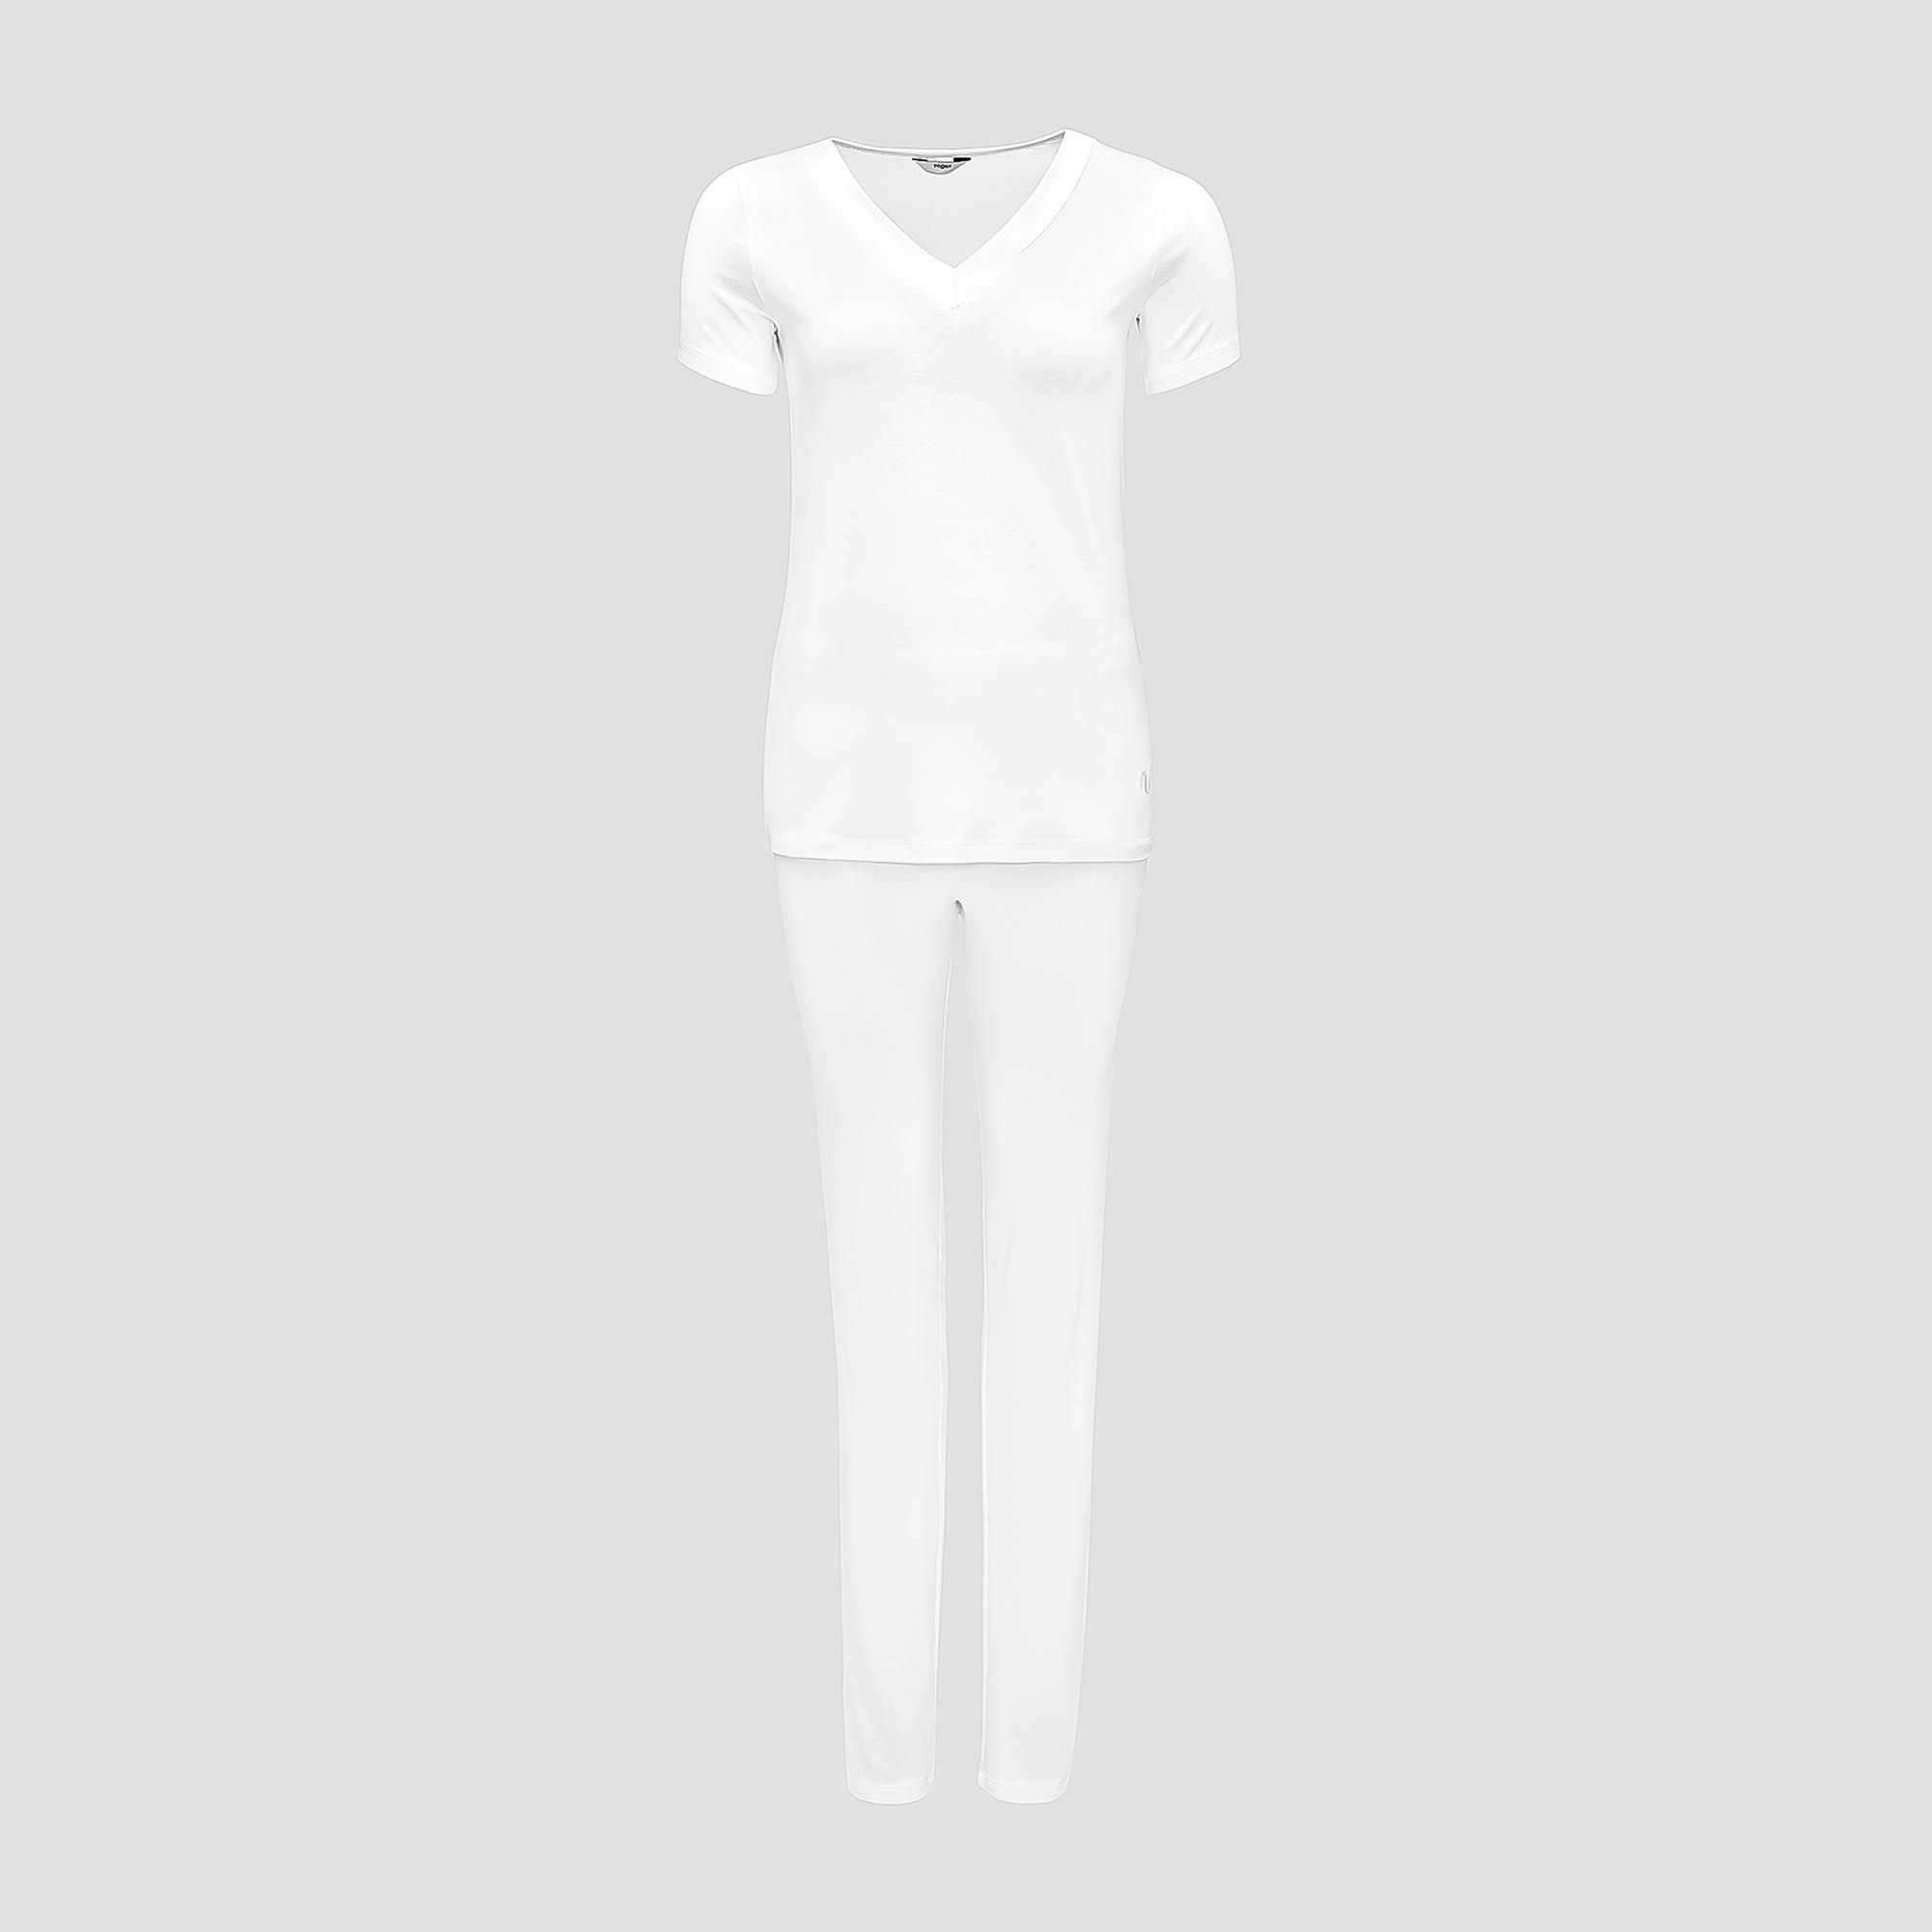 Пижама Togas Ингелла белая женская S(44) 2 предмета пижама togas ингелла белая женская m 46 2 предмета